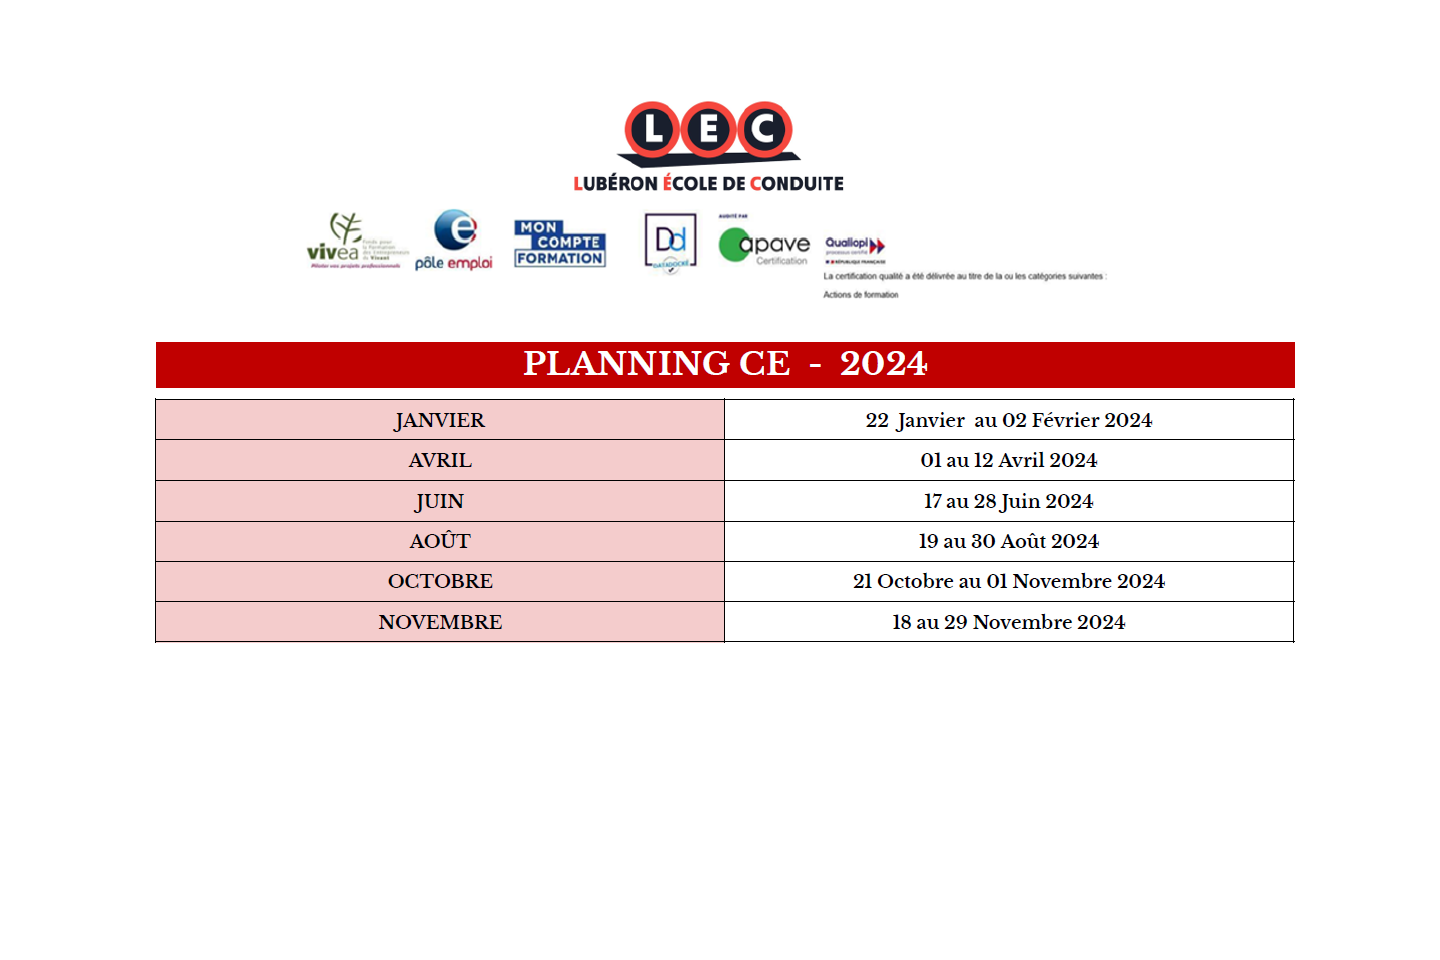 Planning CE - 2024 - LEC Lubéron École de Conduite